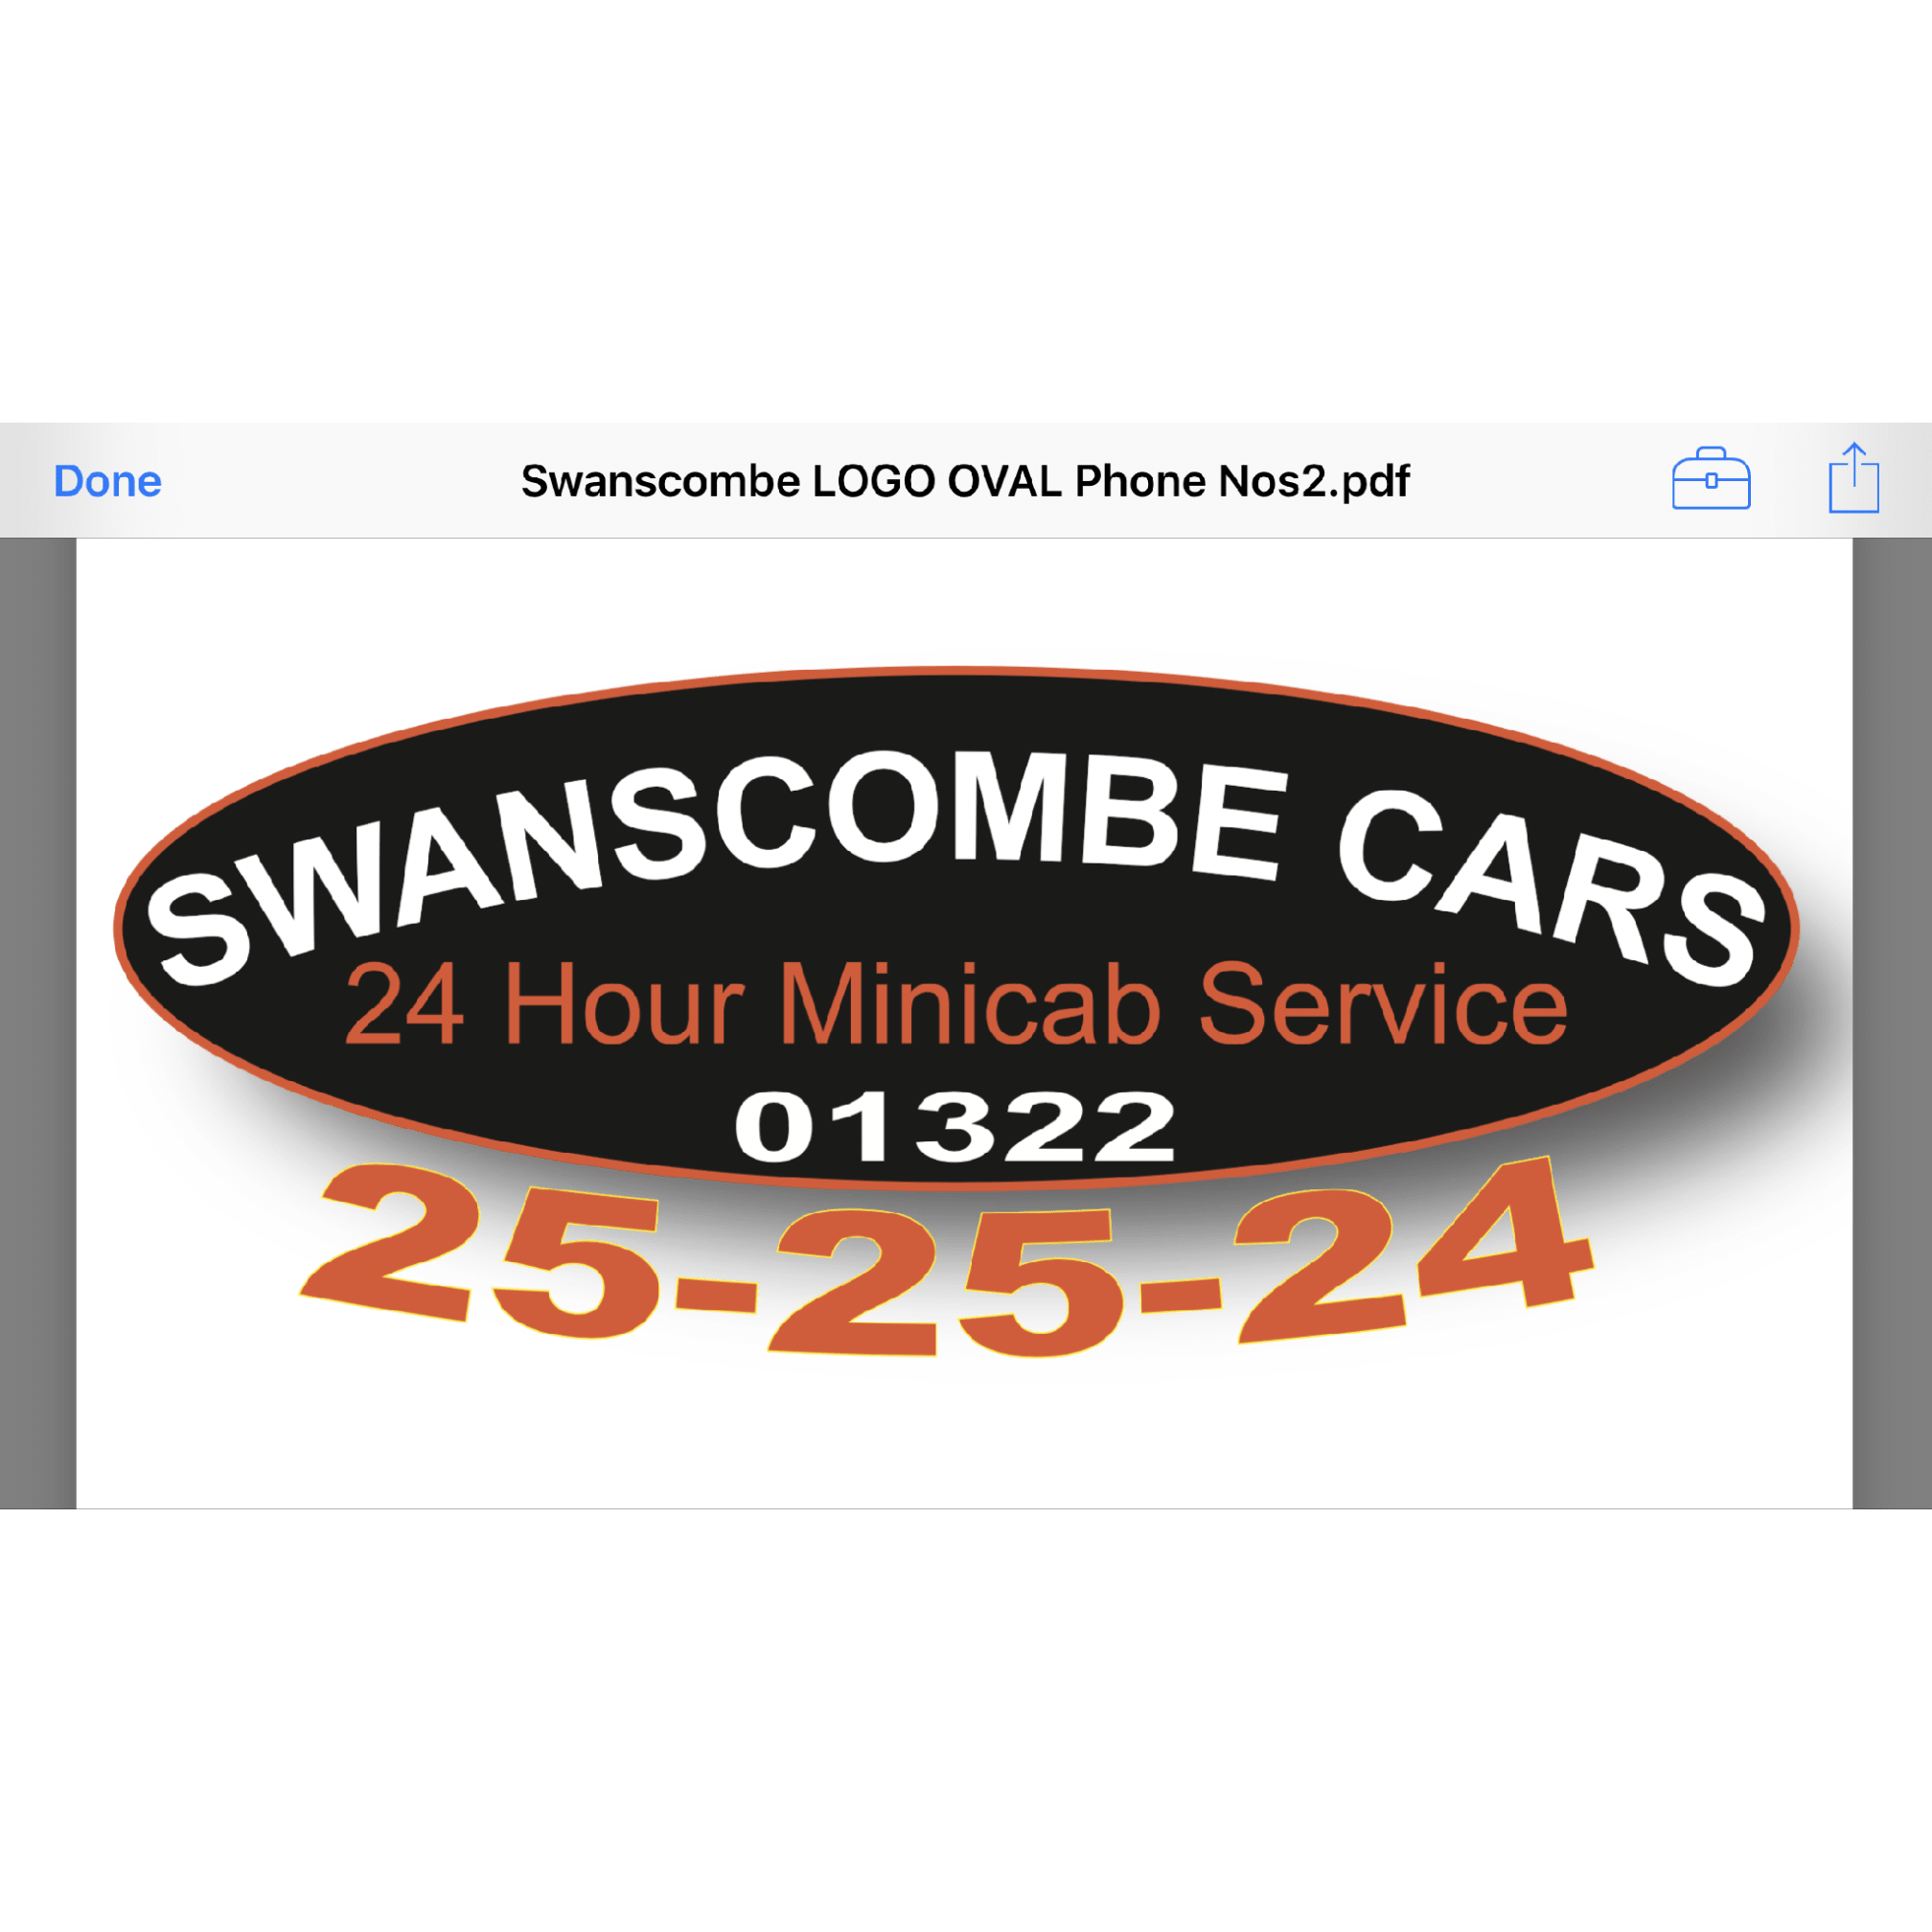 Swanscombe Cars - Dartford, Kent DA2 6QD - 01474 776655 | ShowMeLocal.com